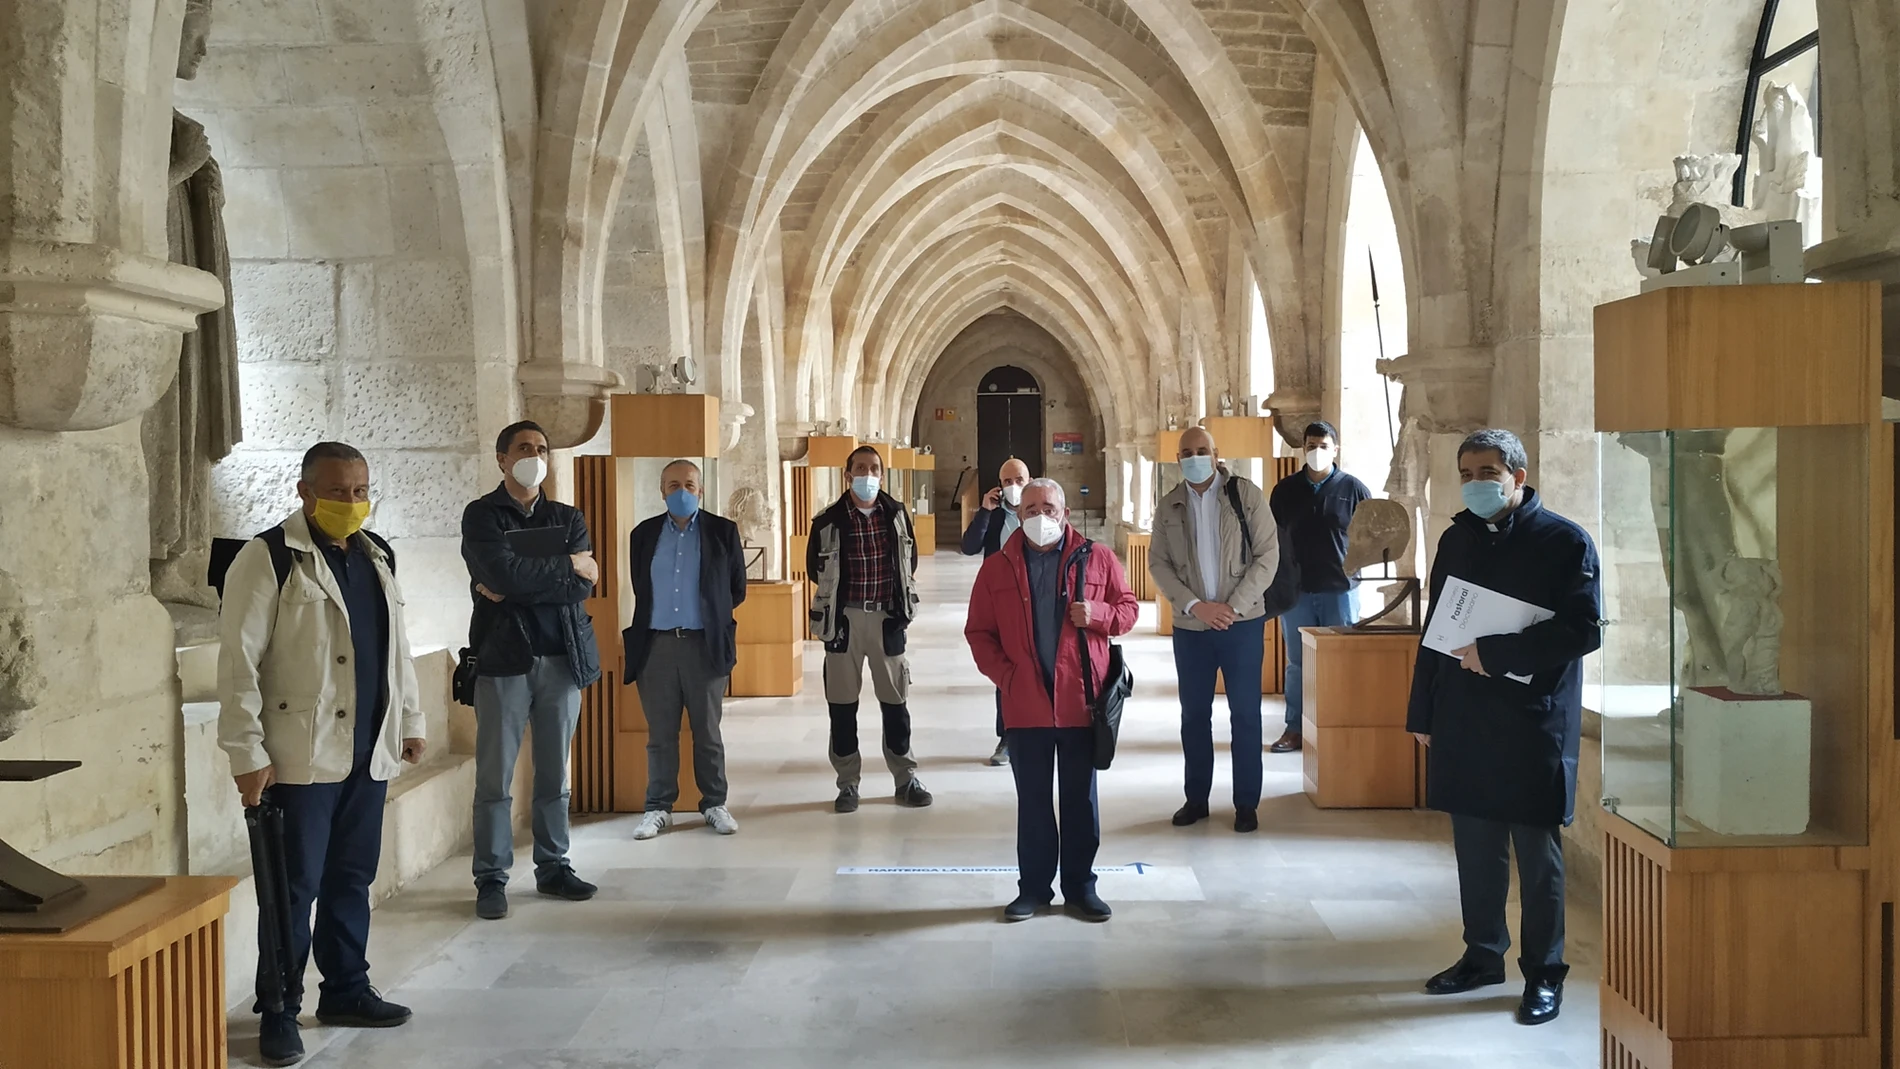 Representantes de las Edades del Hombre visitan la Catedral de Burgos para preparar la exposición del año 2021